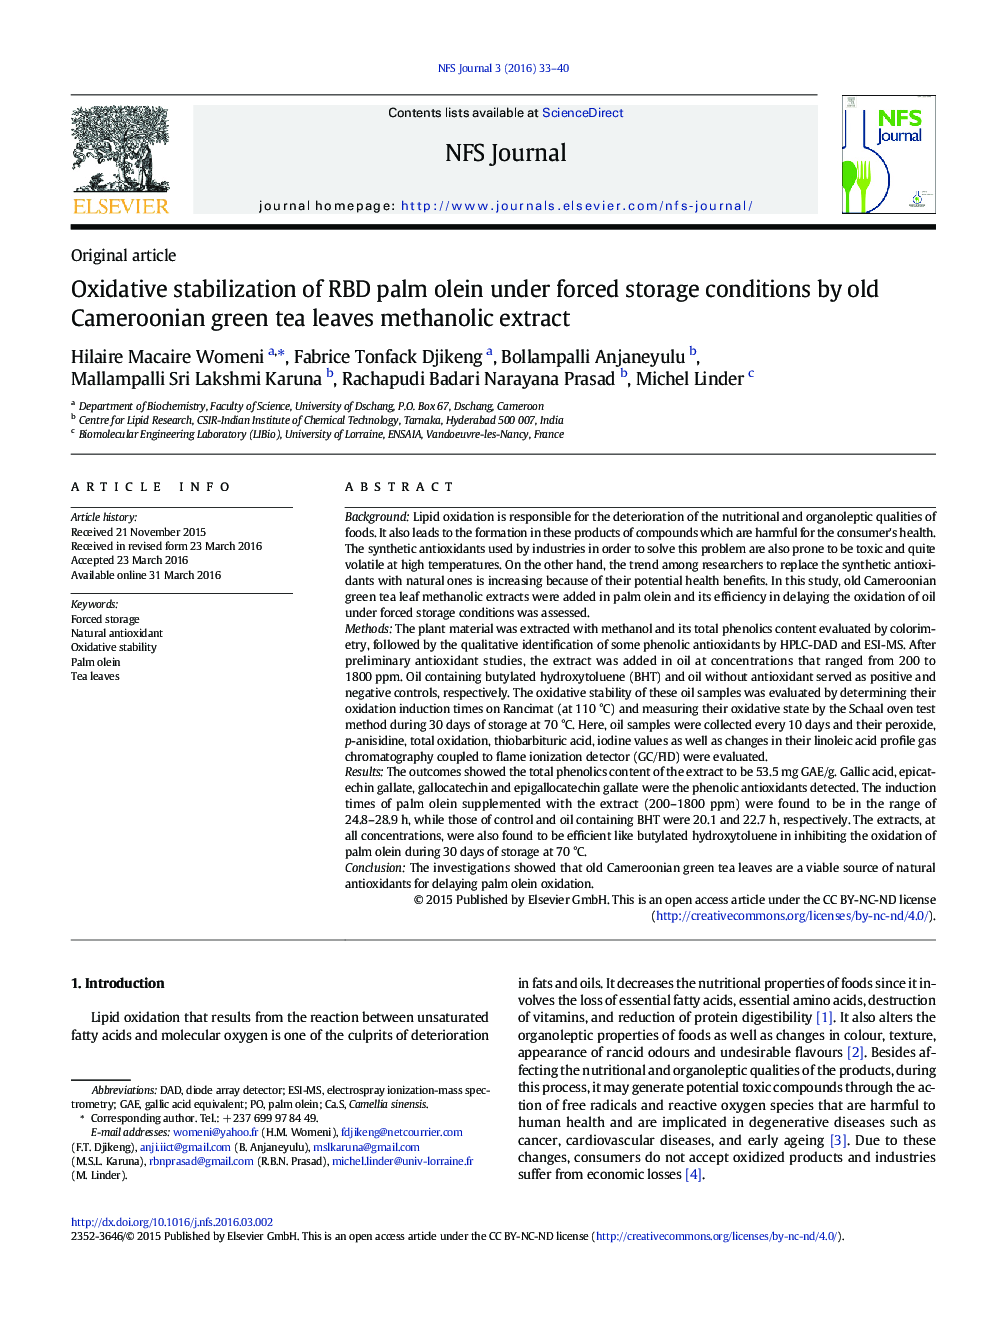 تثبیت اکسیداتیو اولئین پالم RBD تحت شرایط ذخیره سازی اجباری توسط عصاره متانولی برگ های چای سبز کامرون 